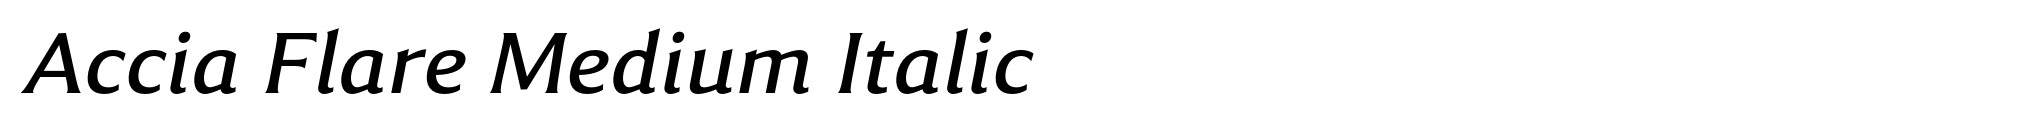 Accia Flare Medium Italic image